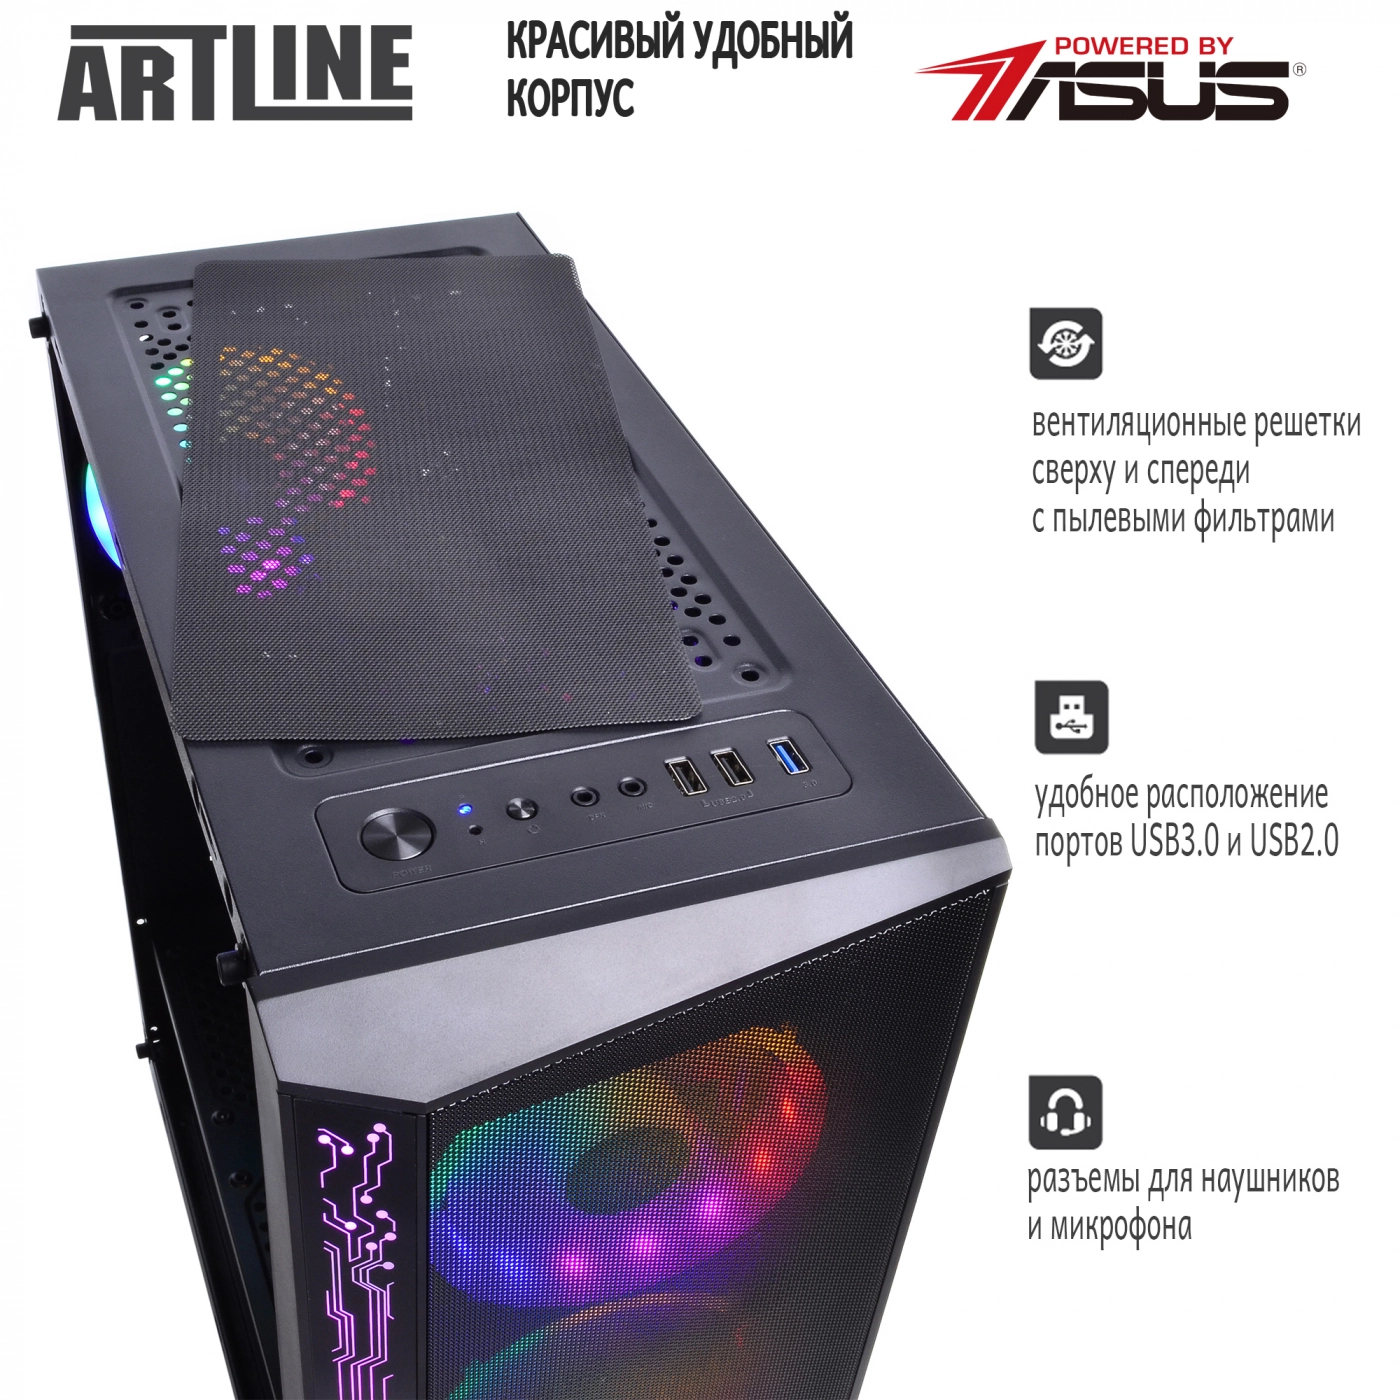 Купить Компьютер ARTLINE Gaming X53v18 - фото 4